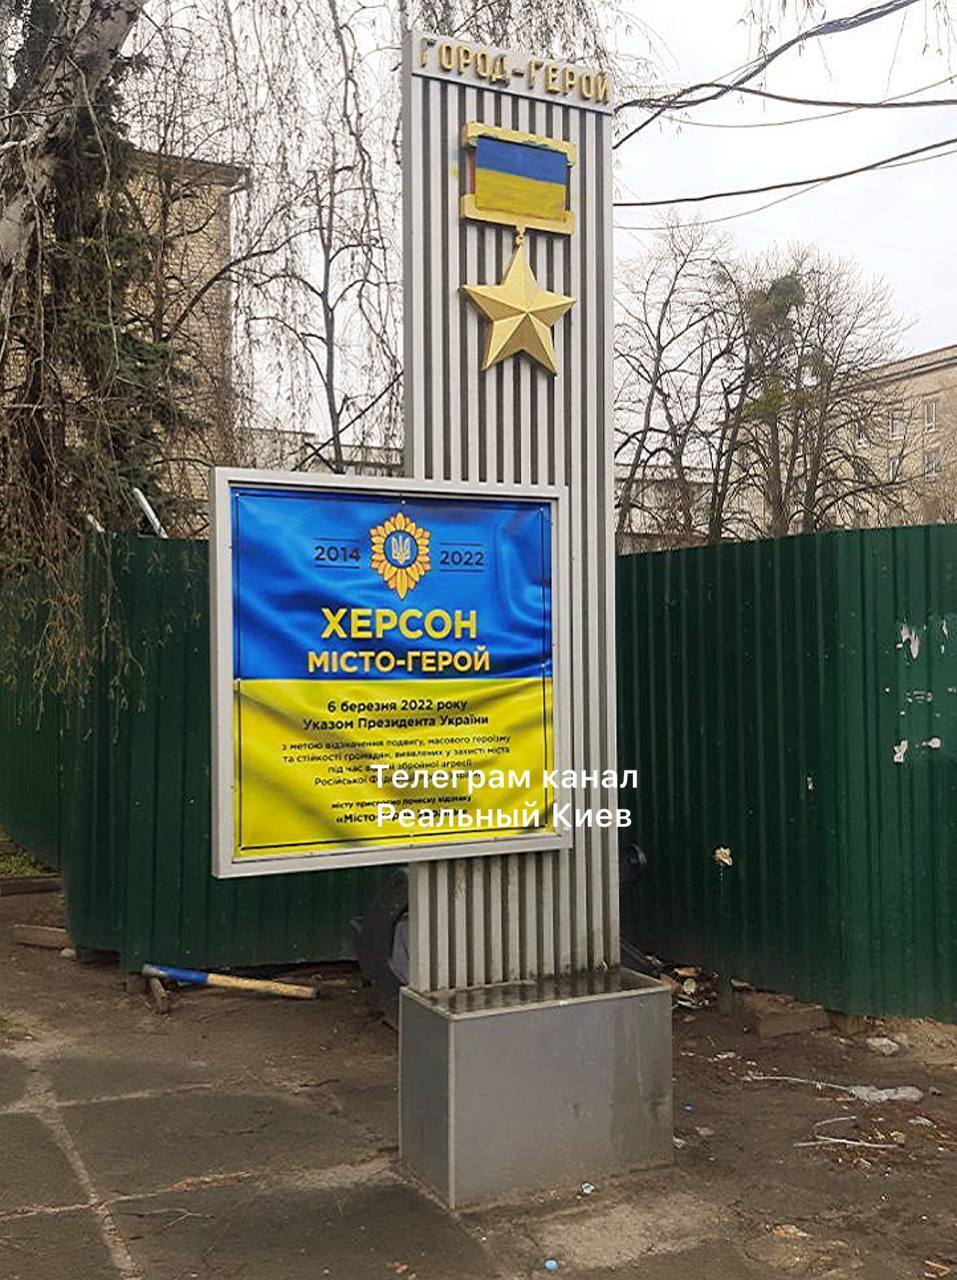 Стели стоять неподалік станції метро "Шулявськваю".